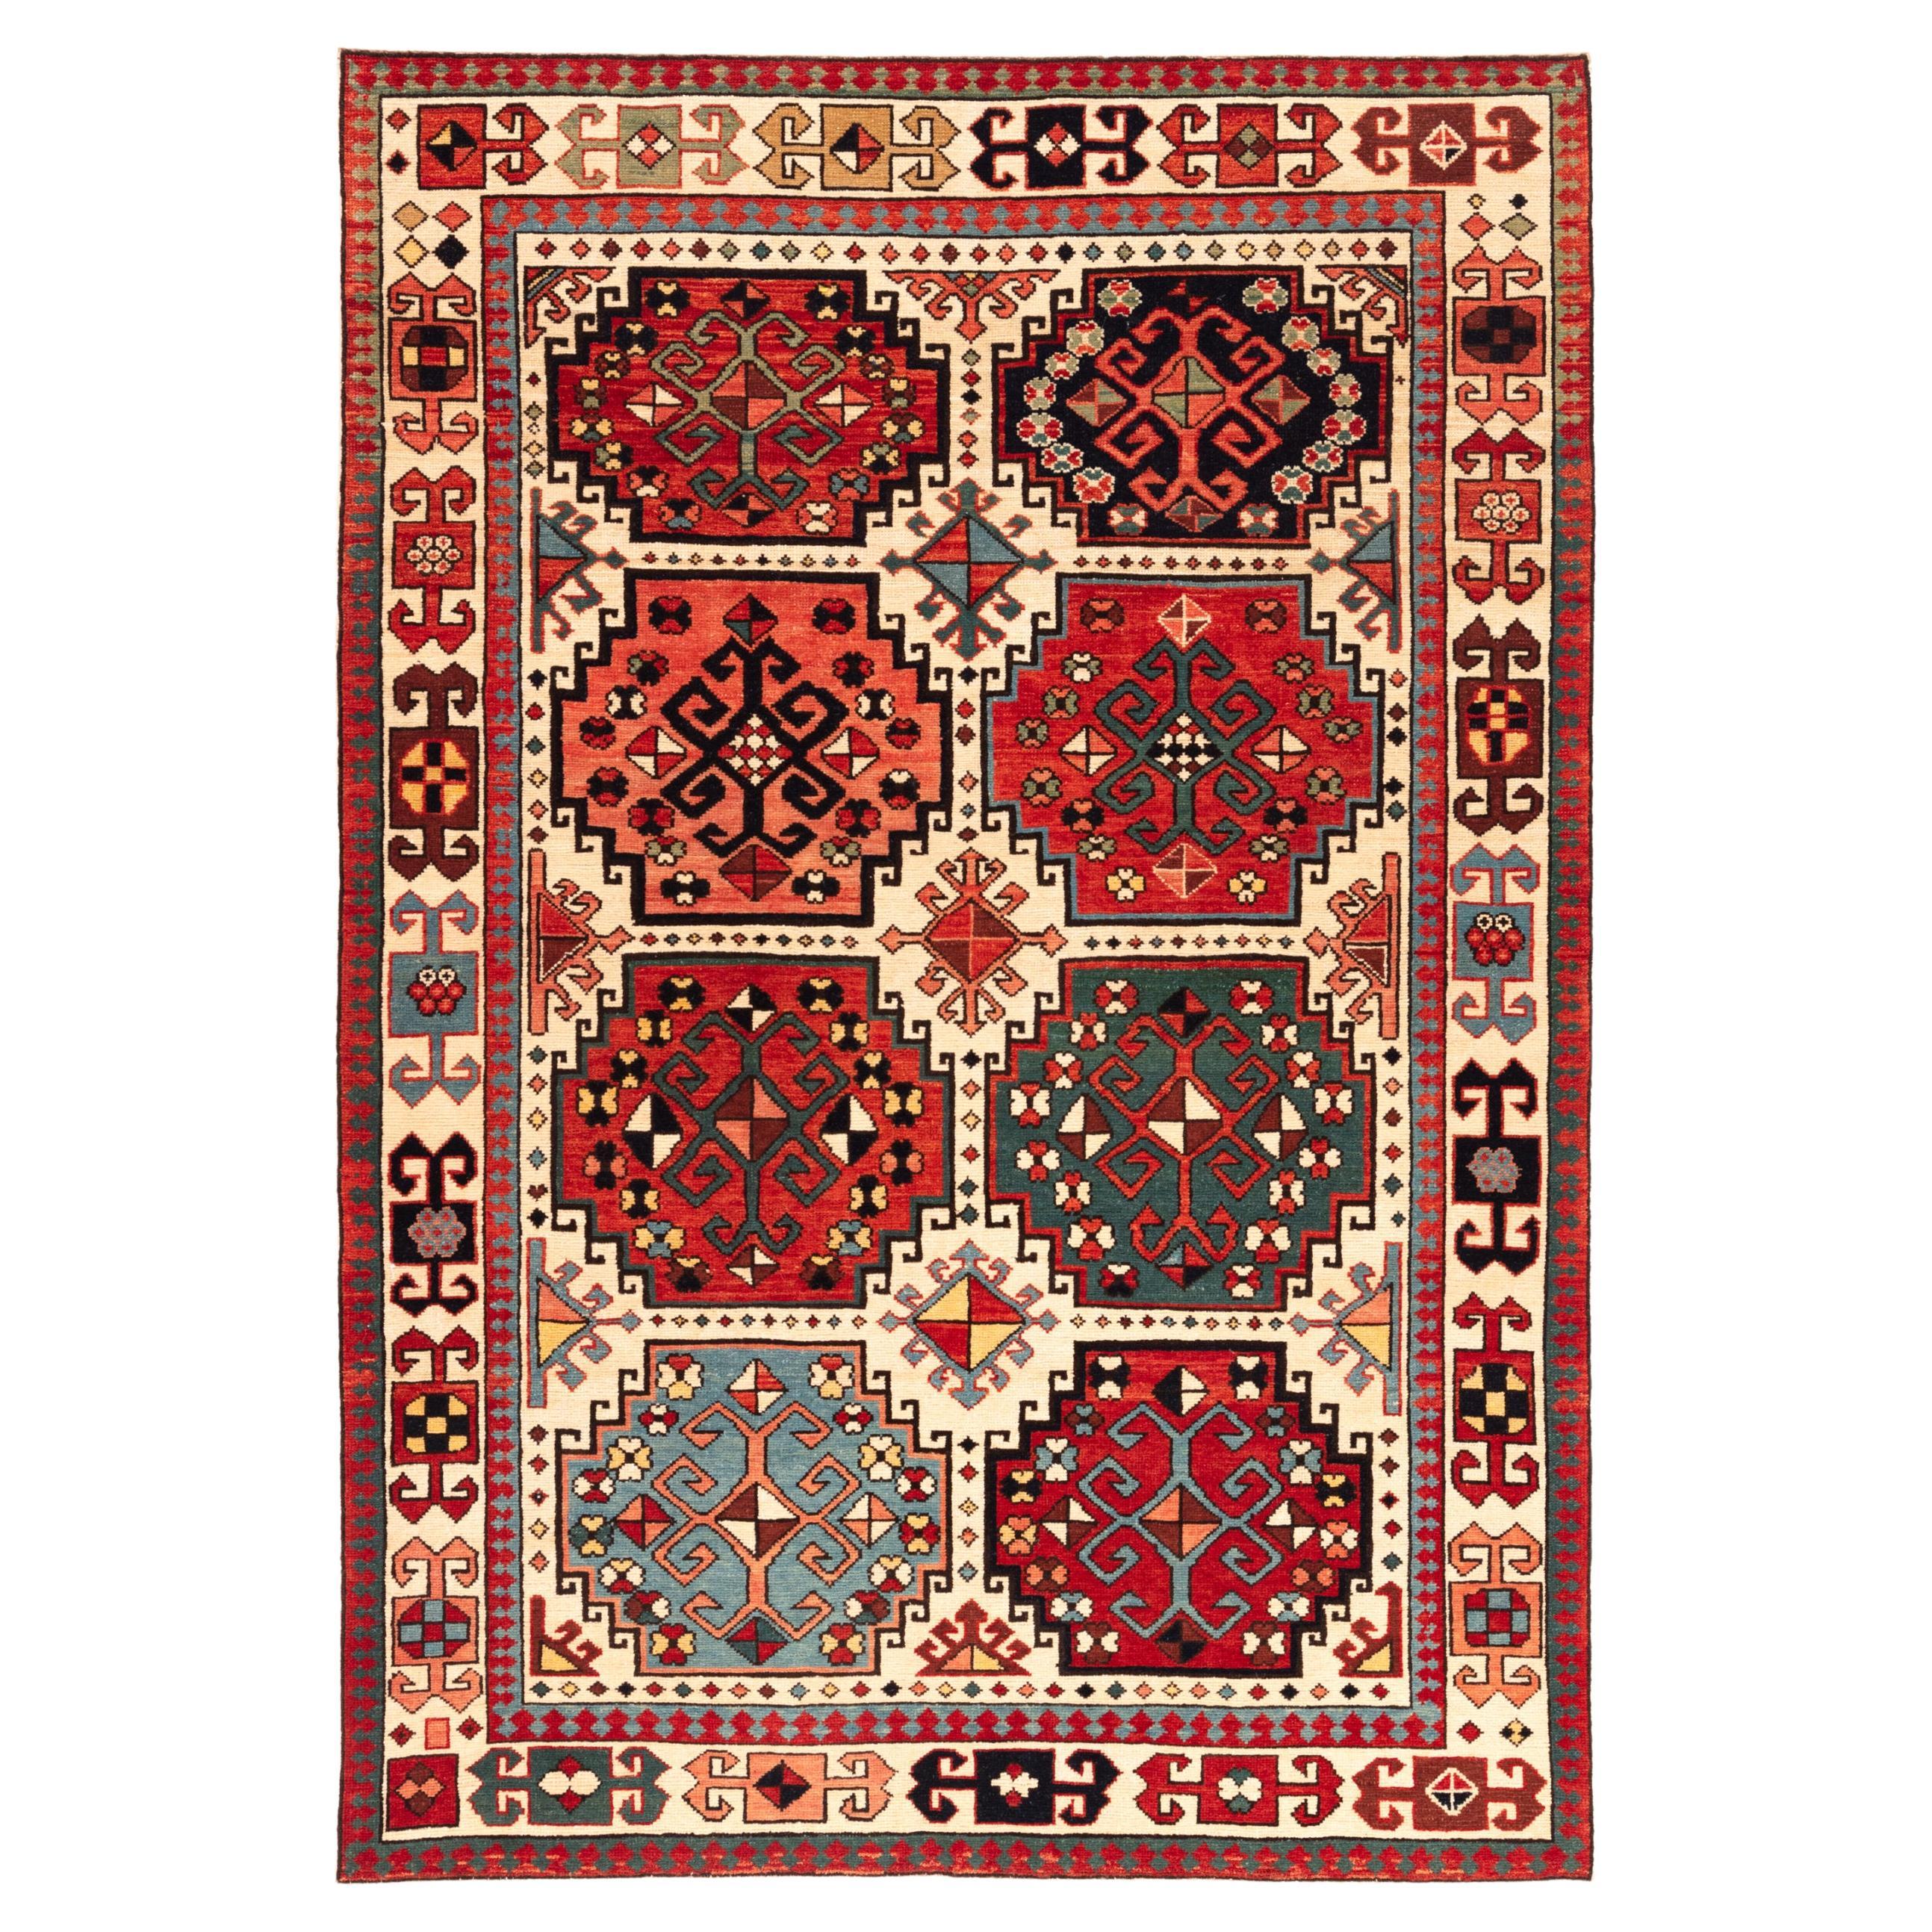 Ararat Rugs Memling Gul Kazak Rug, 19th C Caucasian Revival Carpet Natural Dyed For Sale